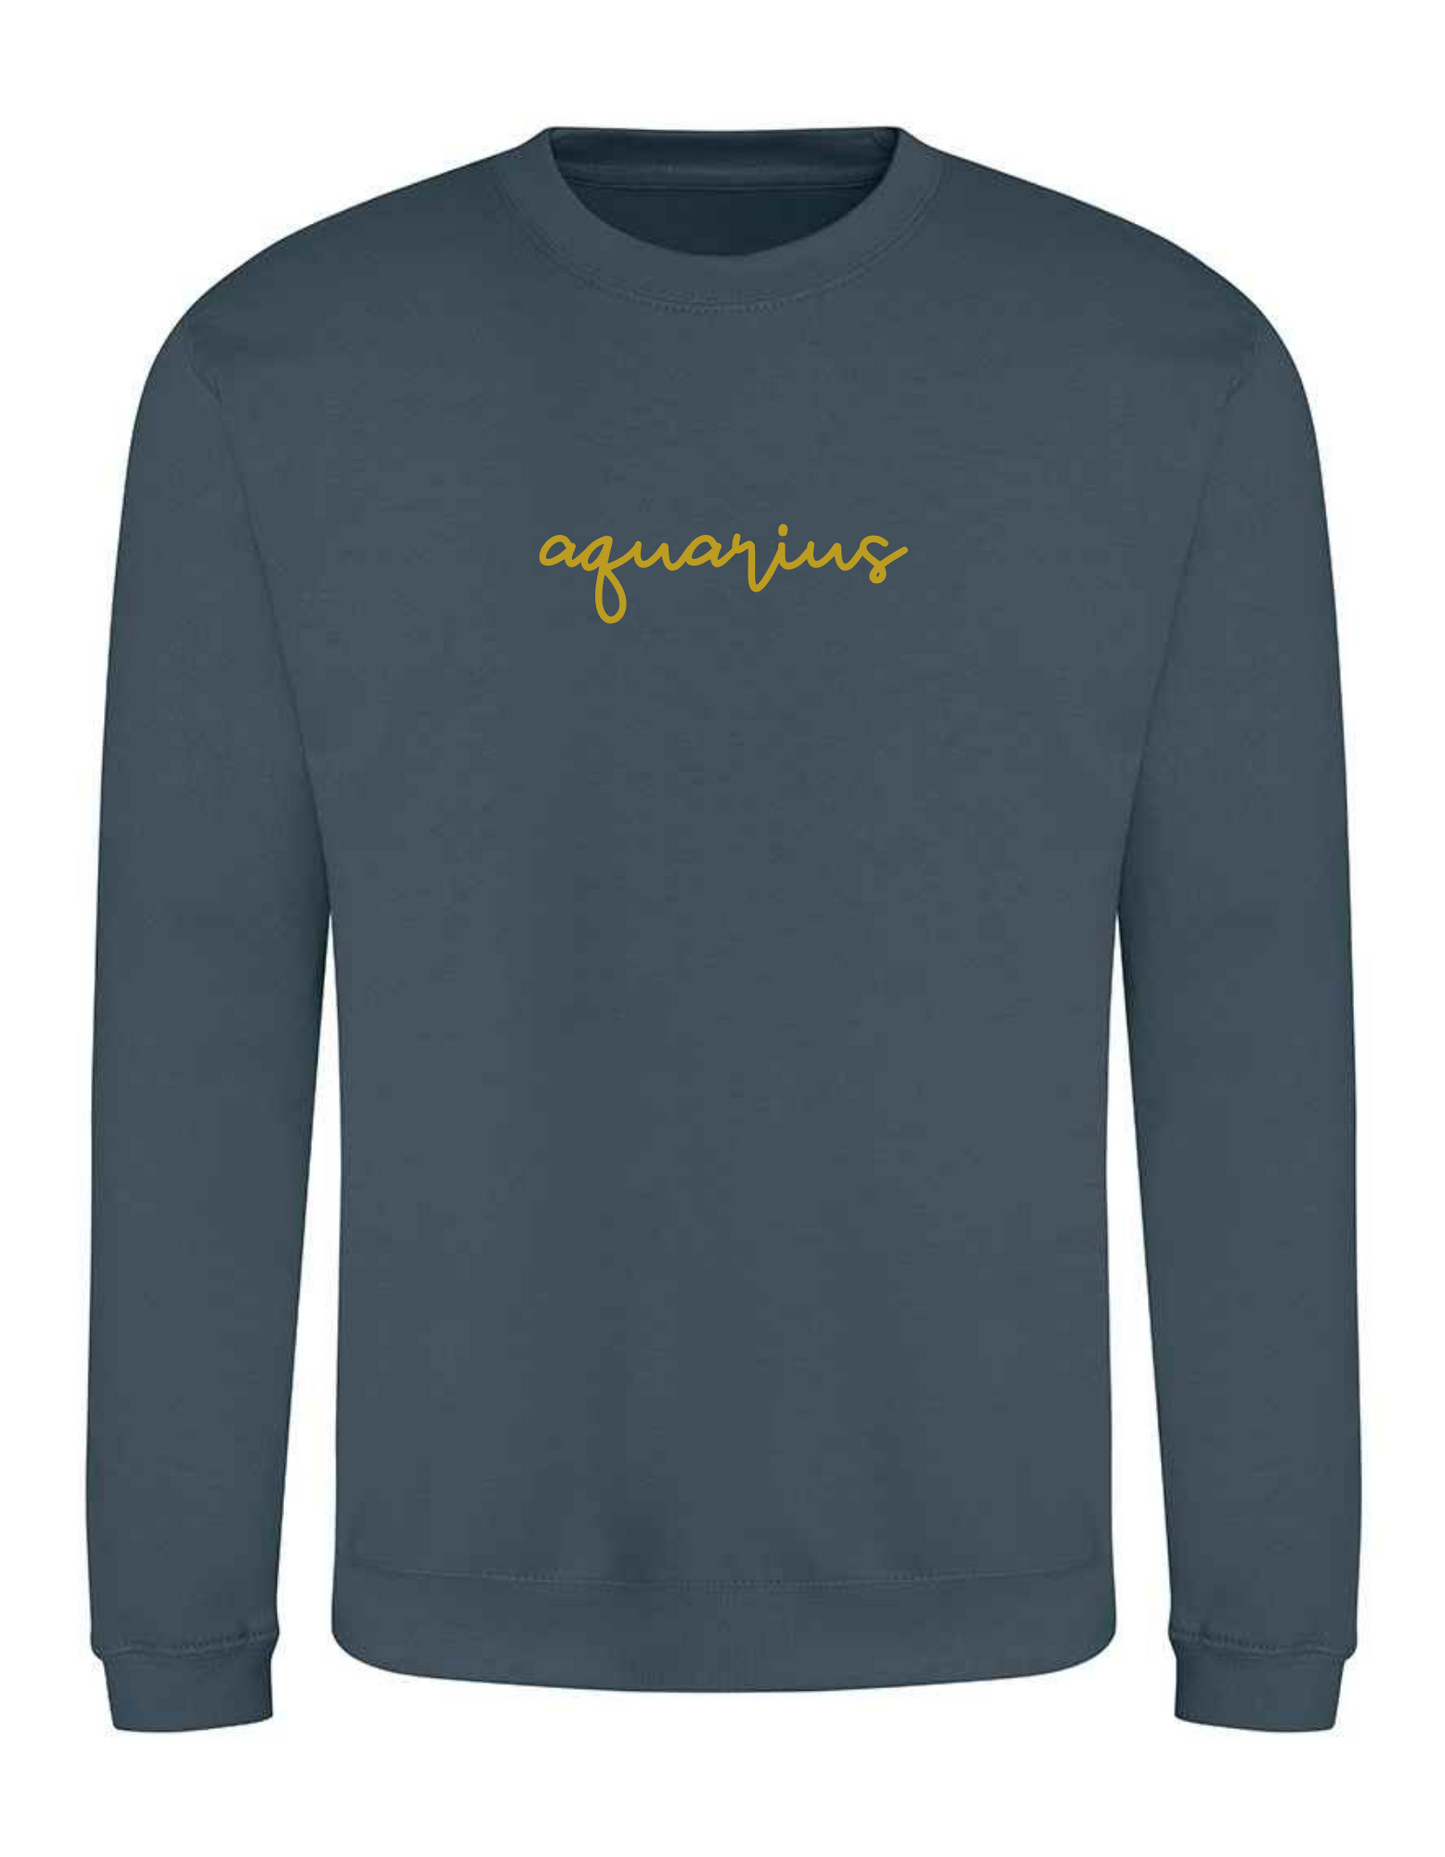 crew neck sweater with zodiac Aquarius design